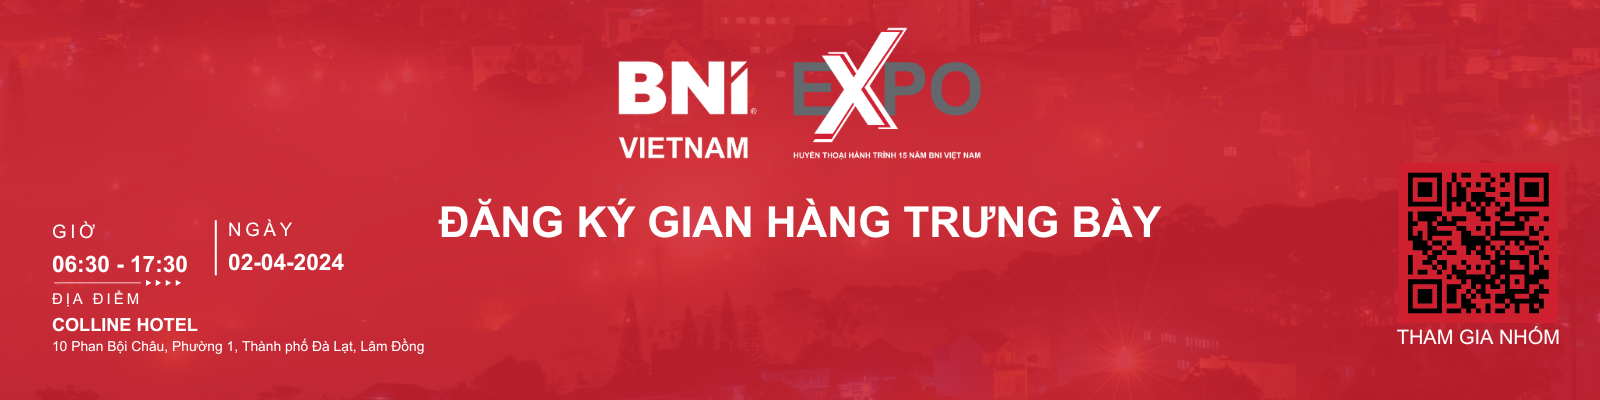 BNI Expo Đà Lạt - Đăng ký gian hàng